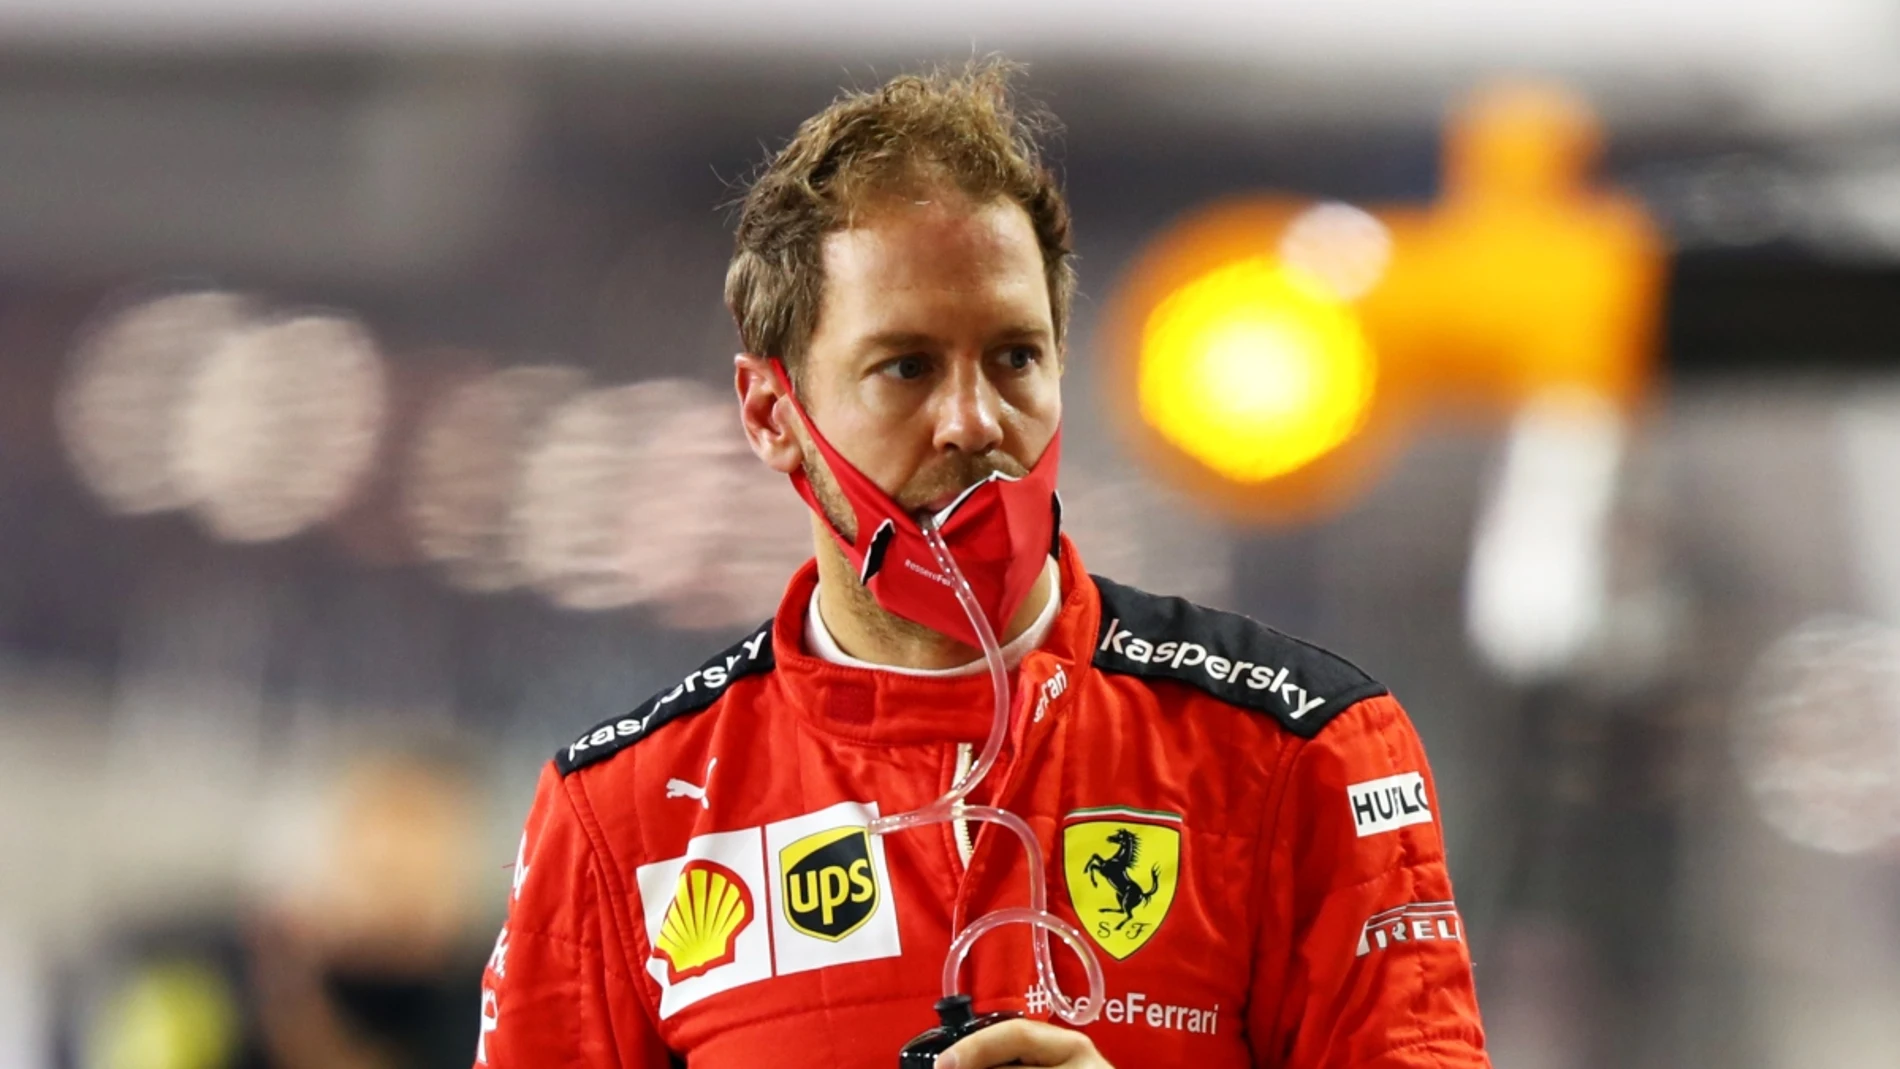 Vettel, con el mono de Ferrari